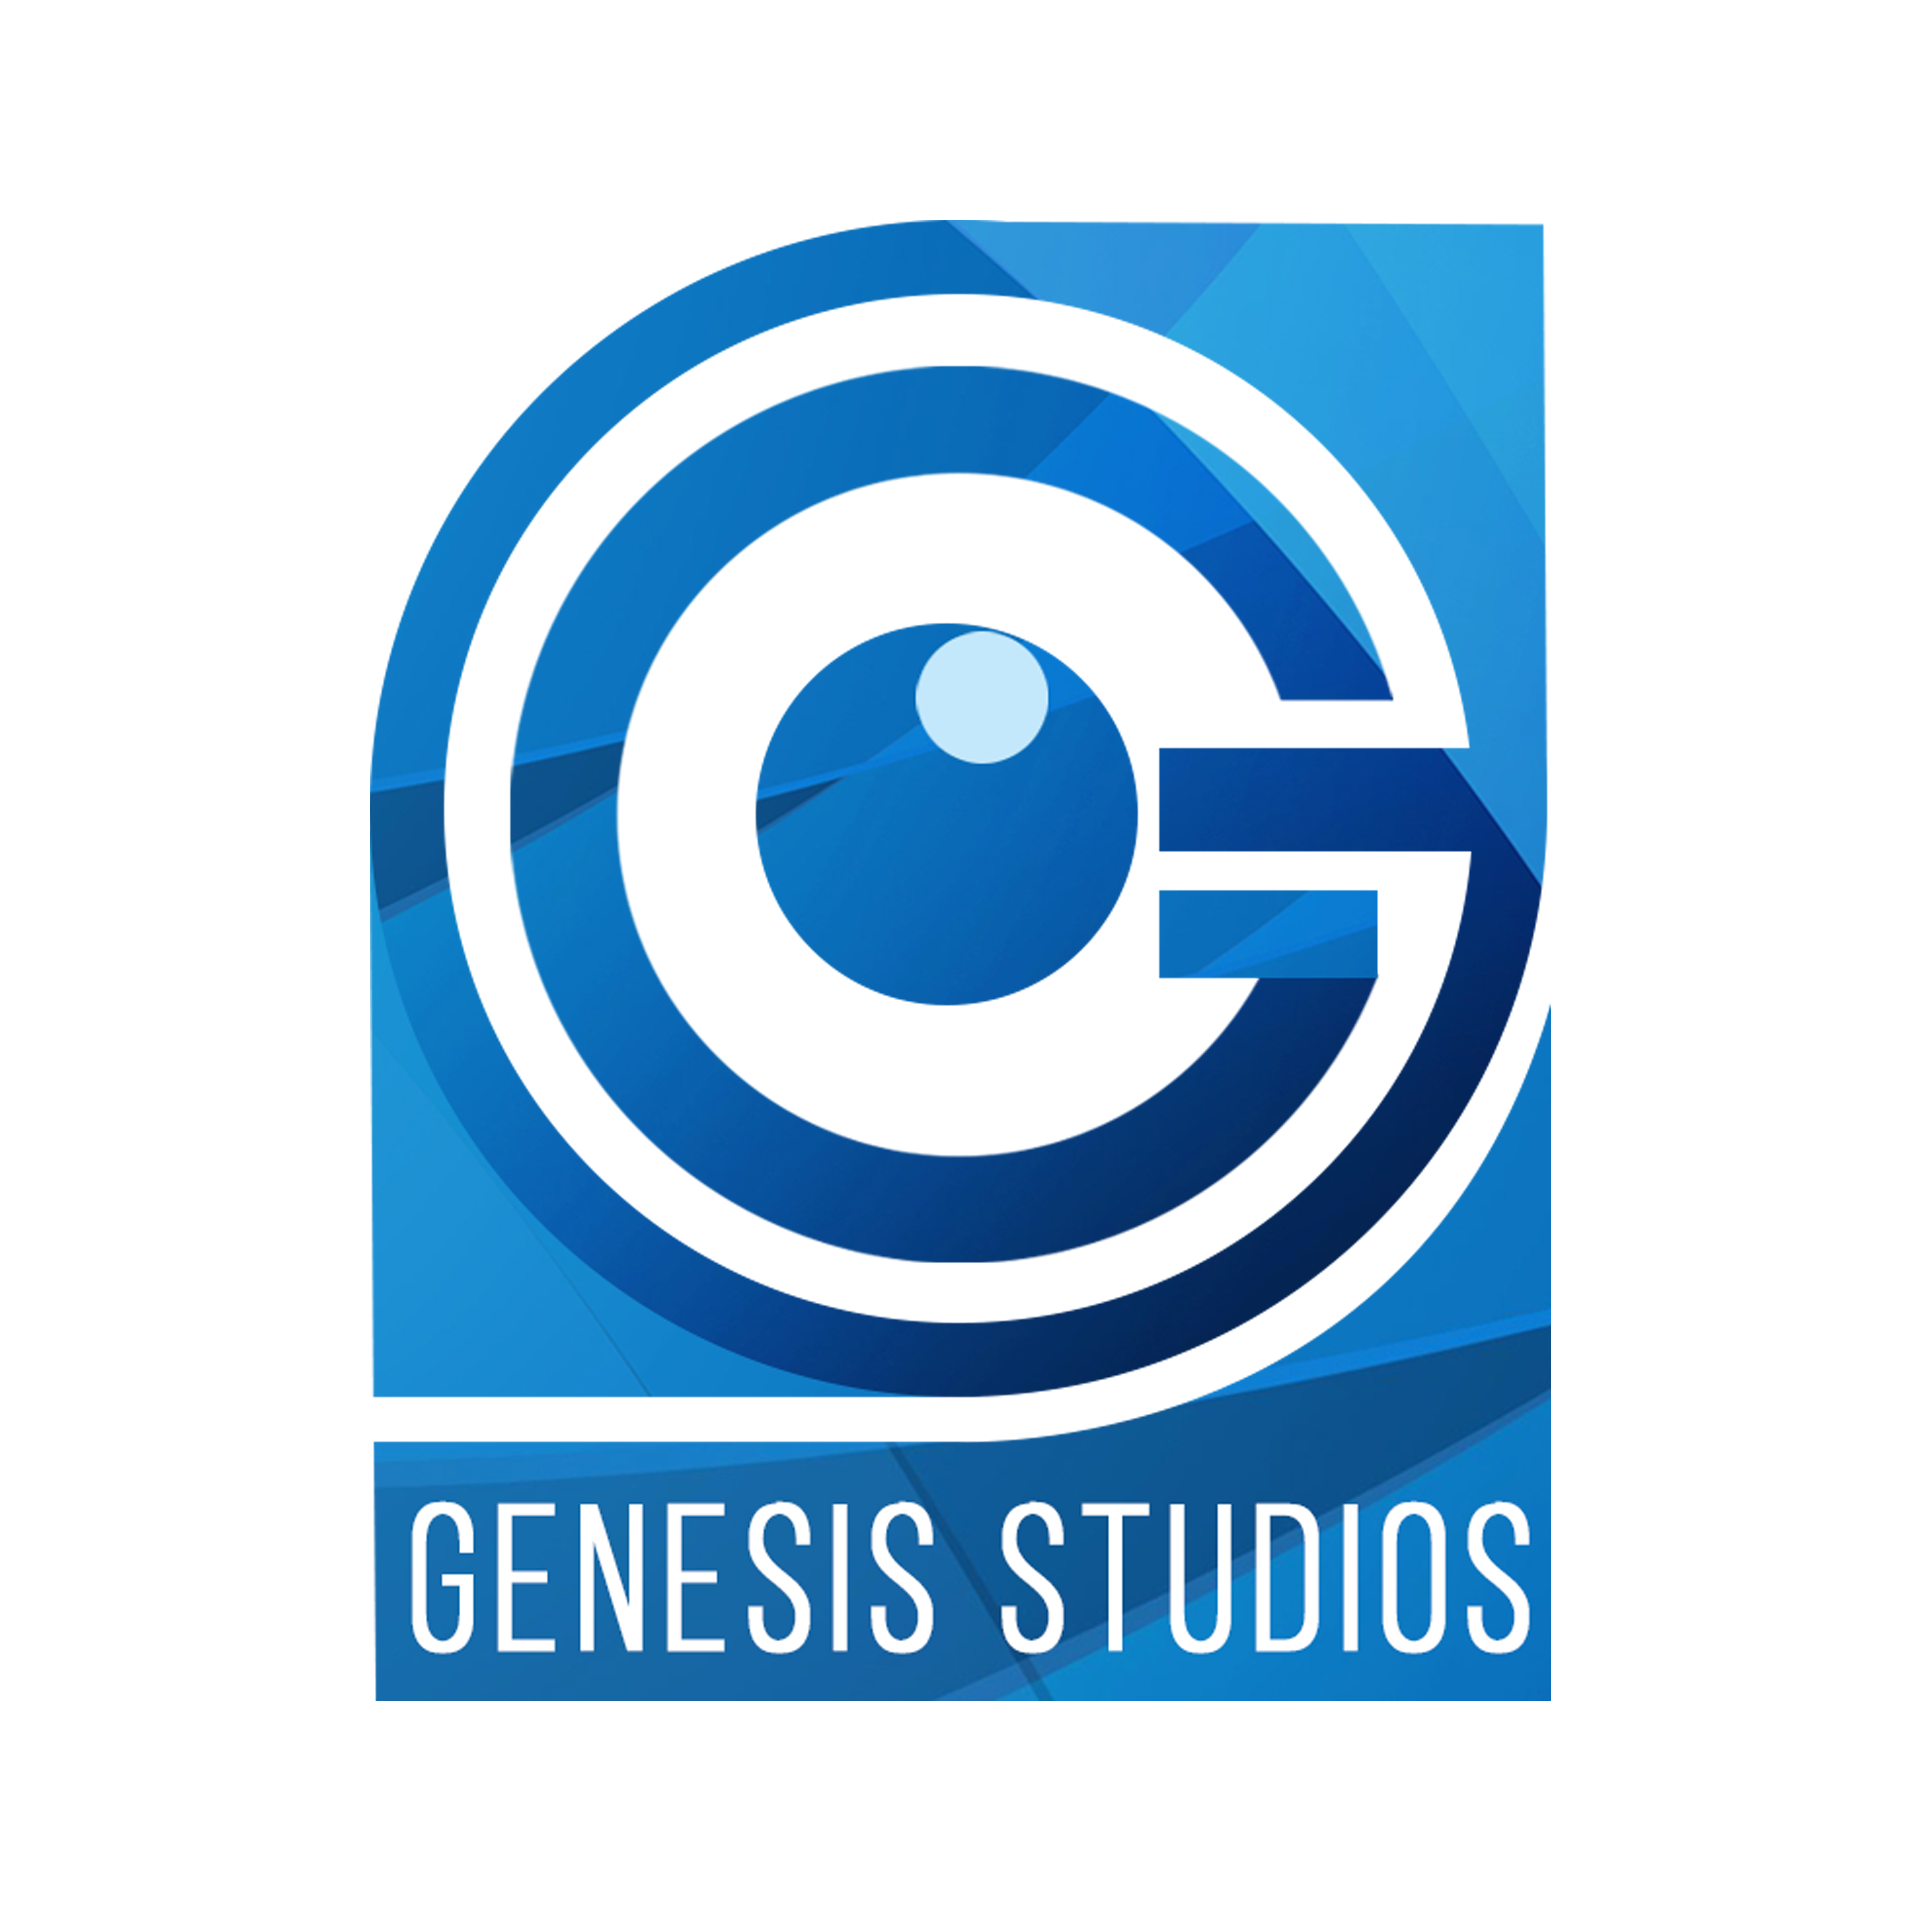 GENESIS STUDIOS